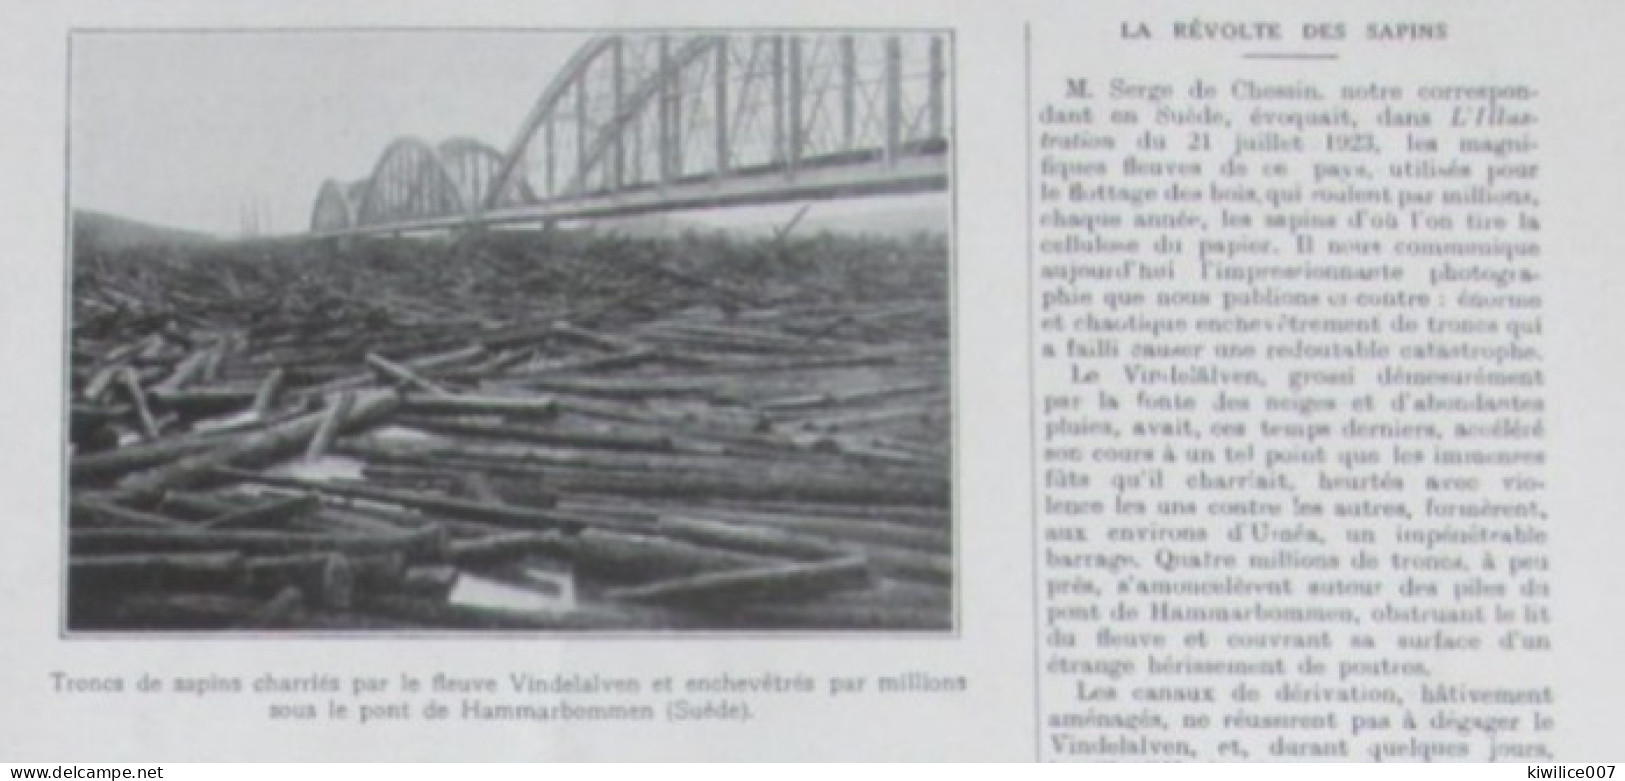 1924  Suede Sweden   Hammarbommen  Pont  Bridge  TRONCS DE SAPINS BOIS BUCHERONNAGE - Unclassified